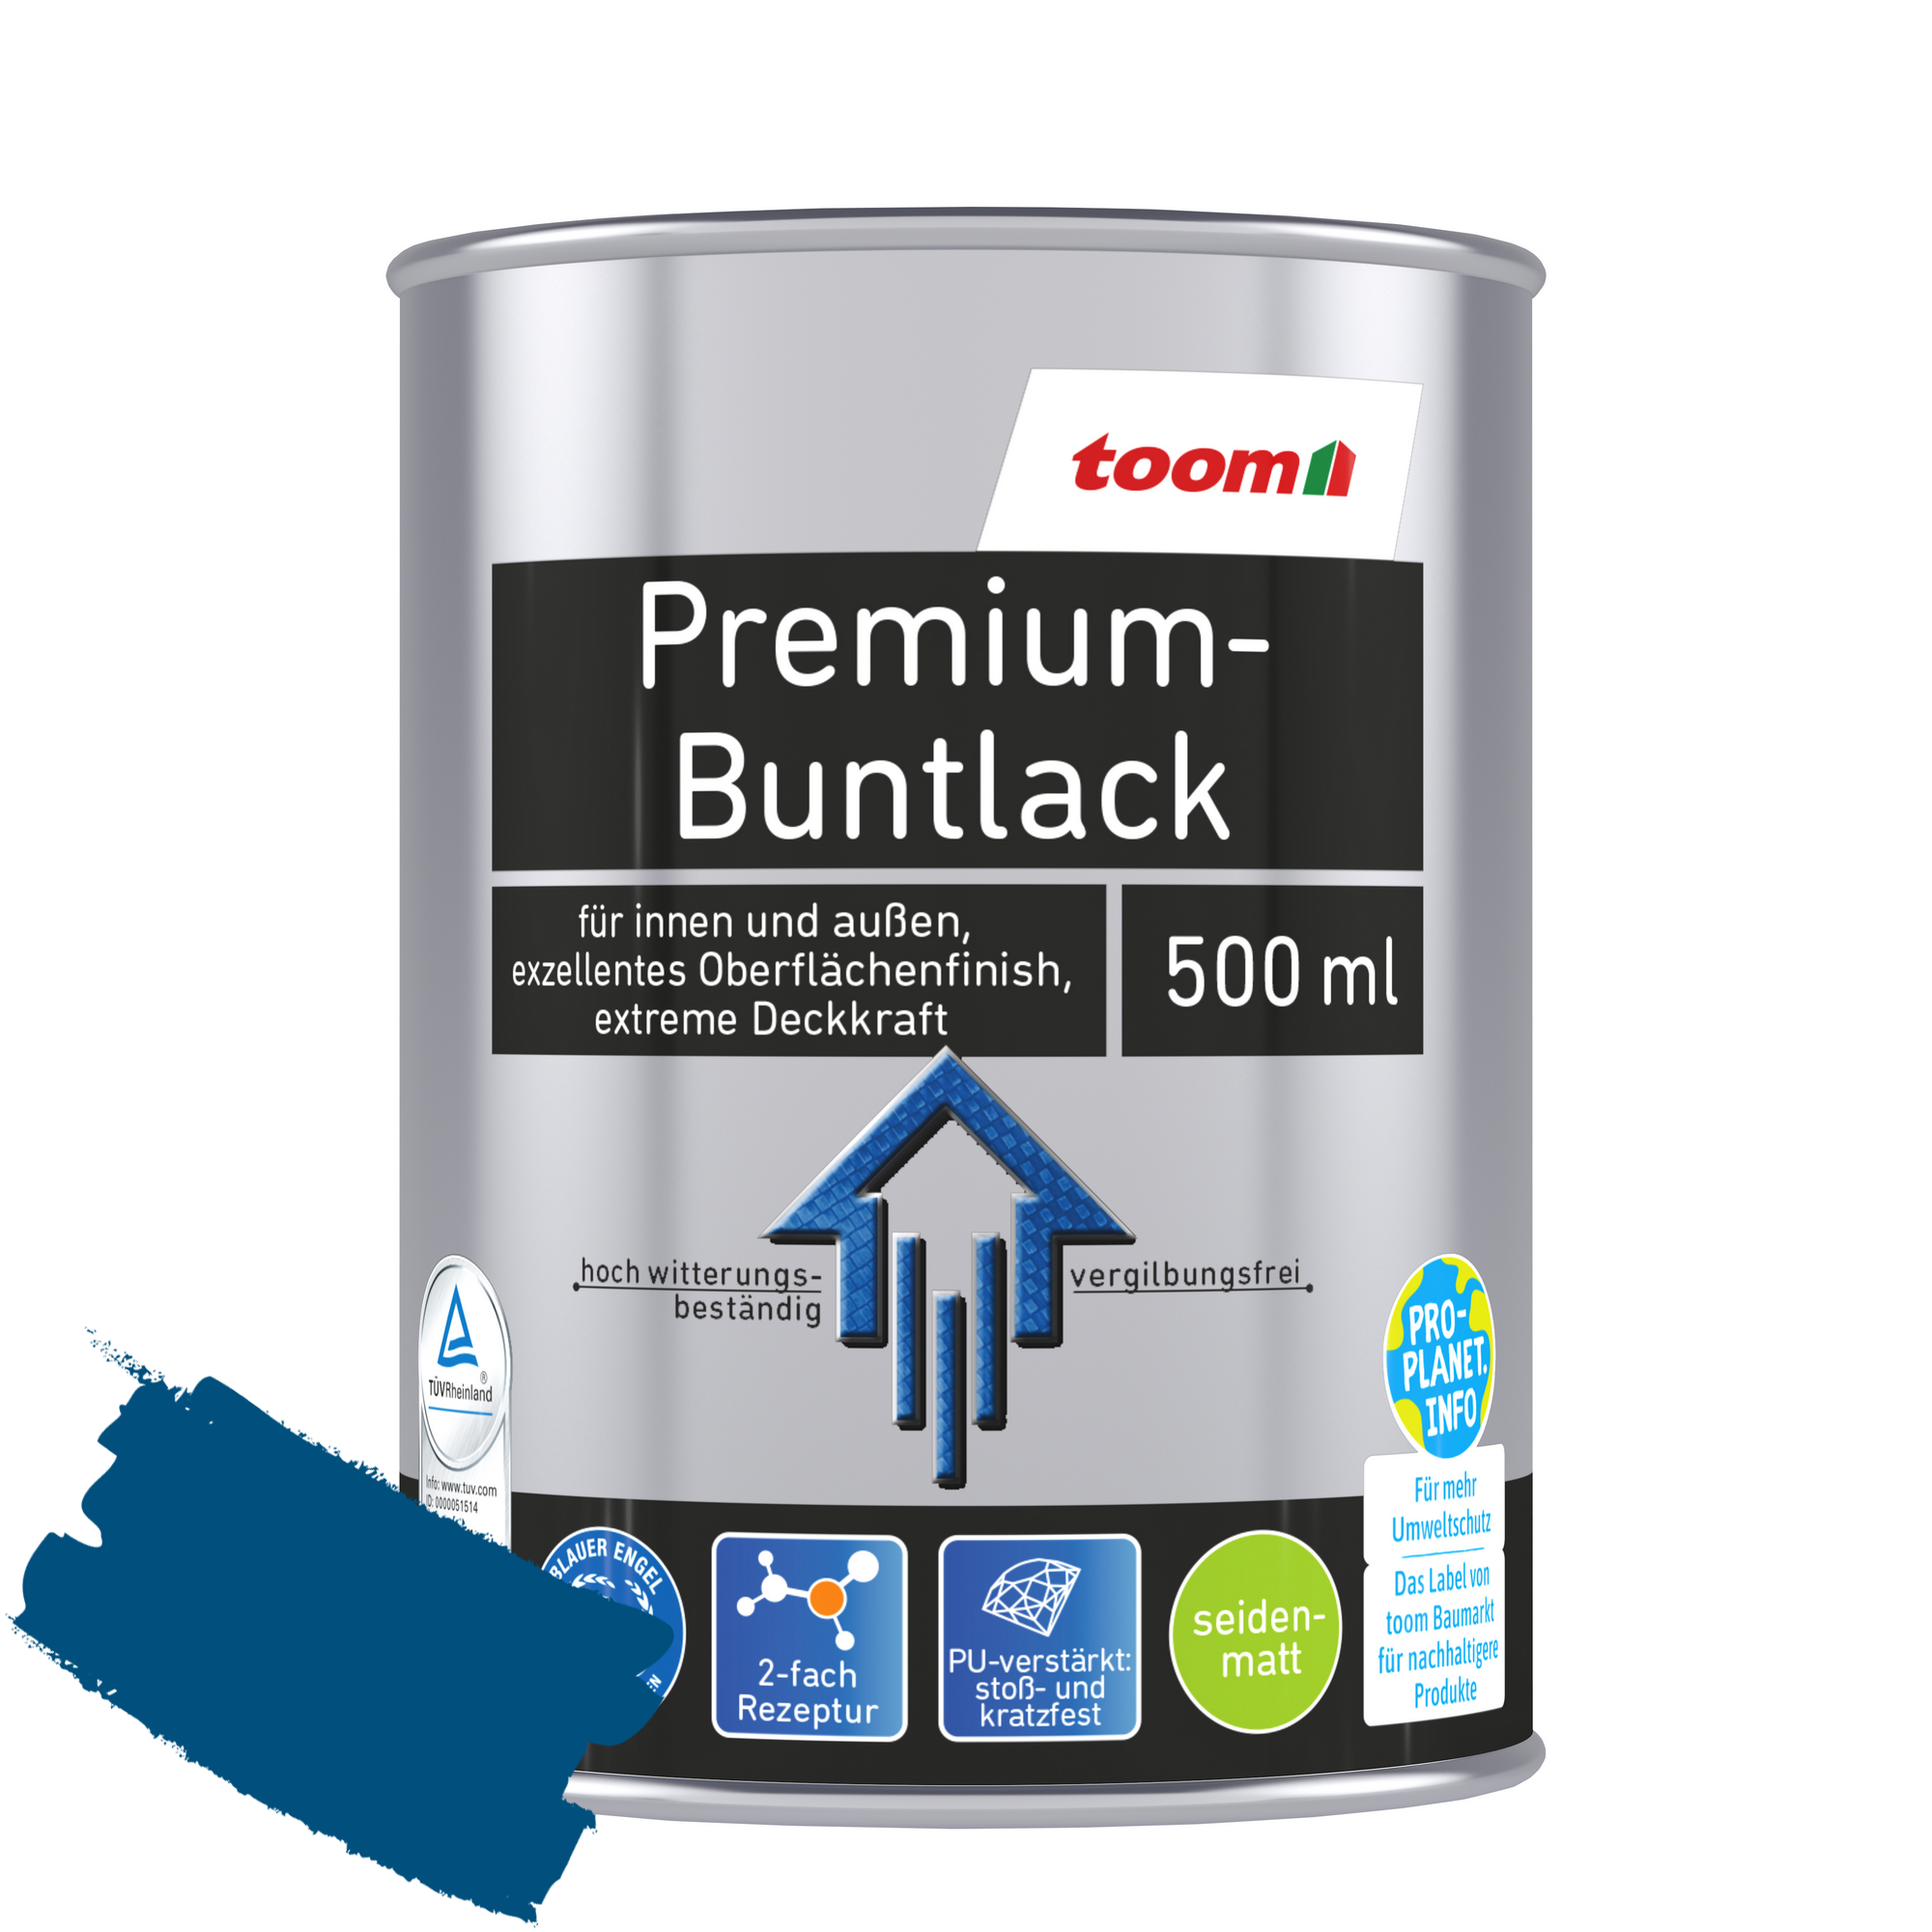 Premium-Buntlack enzianblau seidenmatt 500 ml + product picture